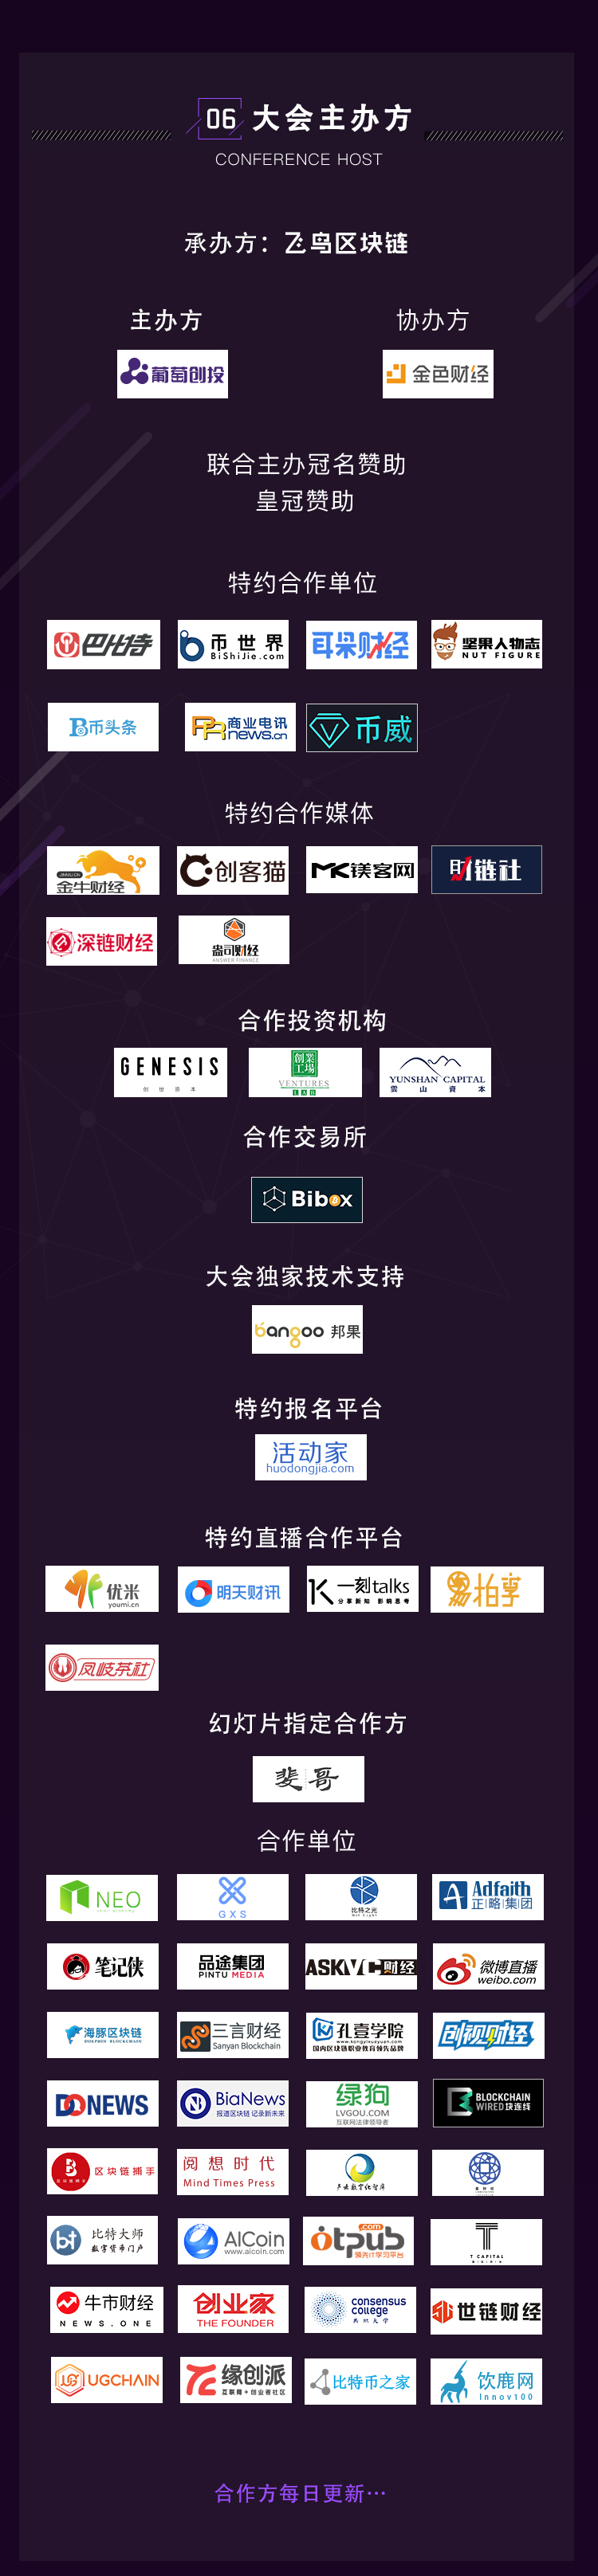 2018中国区块链技术与应用高峰论坛